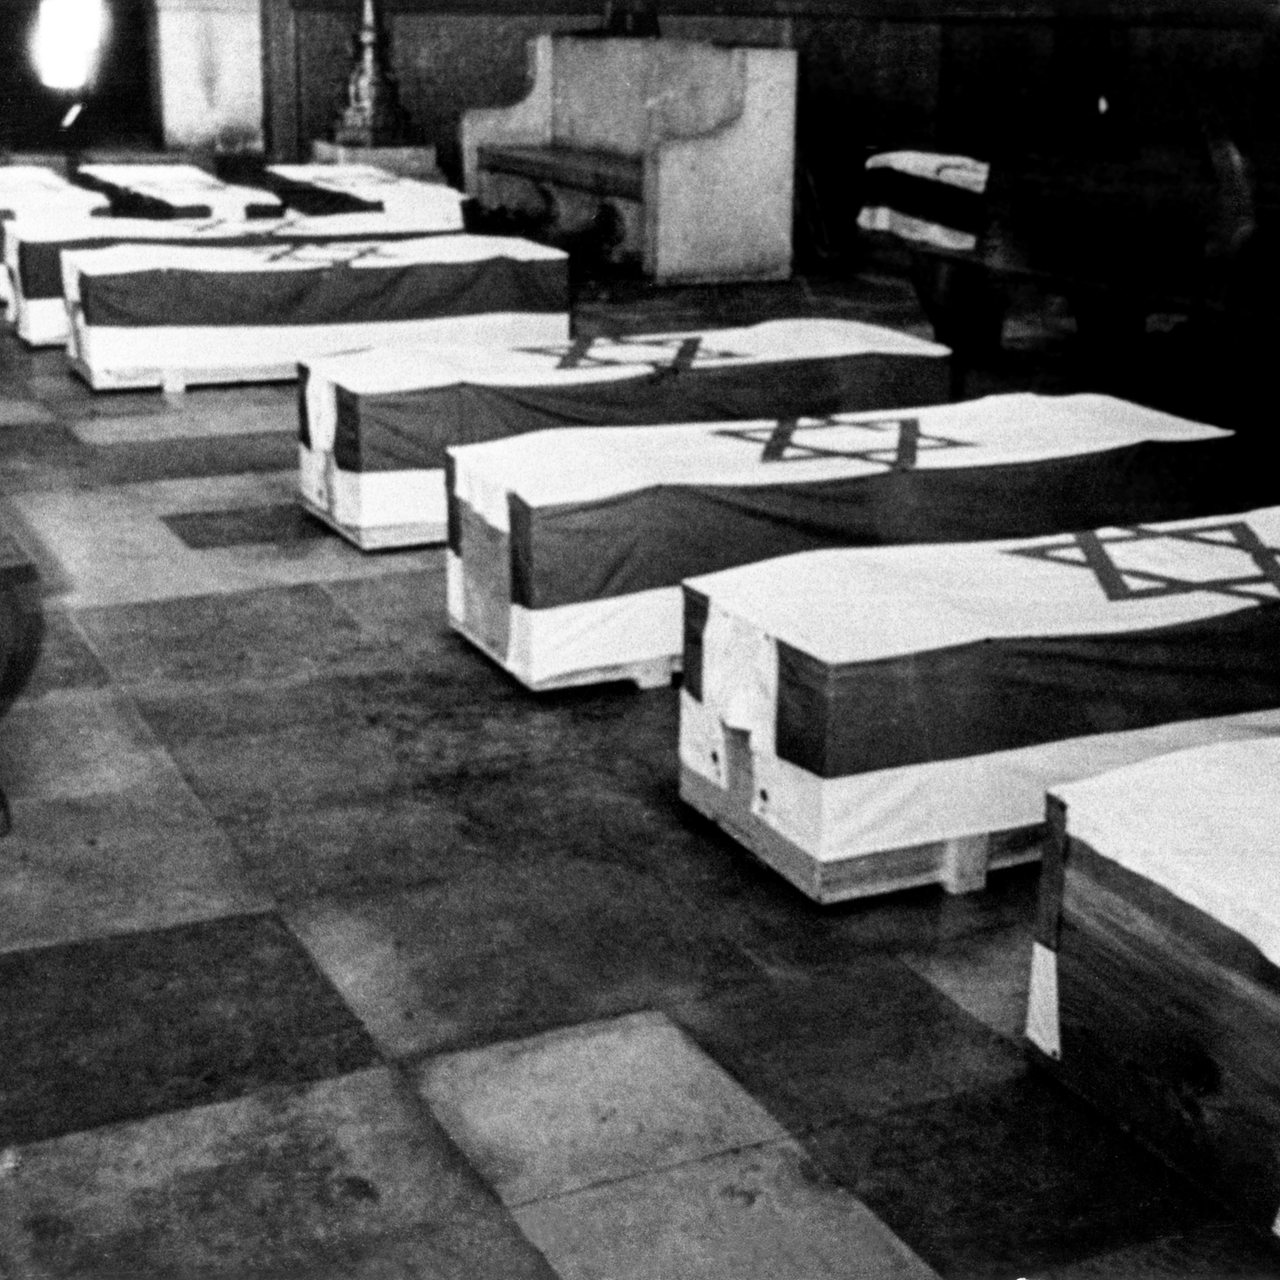 Die sterblichen Überreste der Opfer des arabischen Terroranschlags vom 05.09.1972 auf die israelische Olympia-Mannschaft sind in der Münchner Synagoge aufgebahrt.